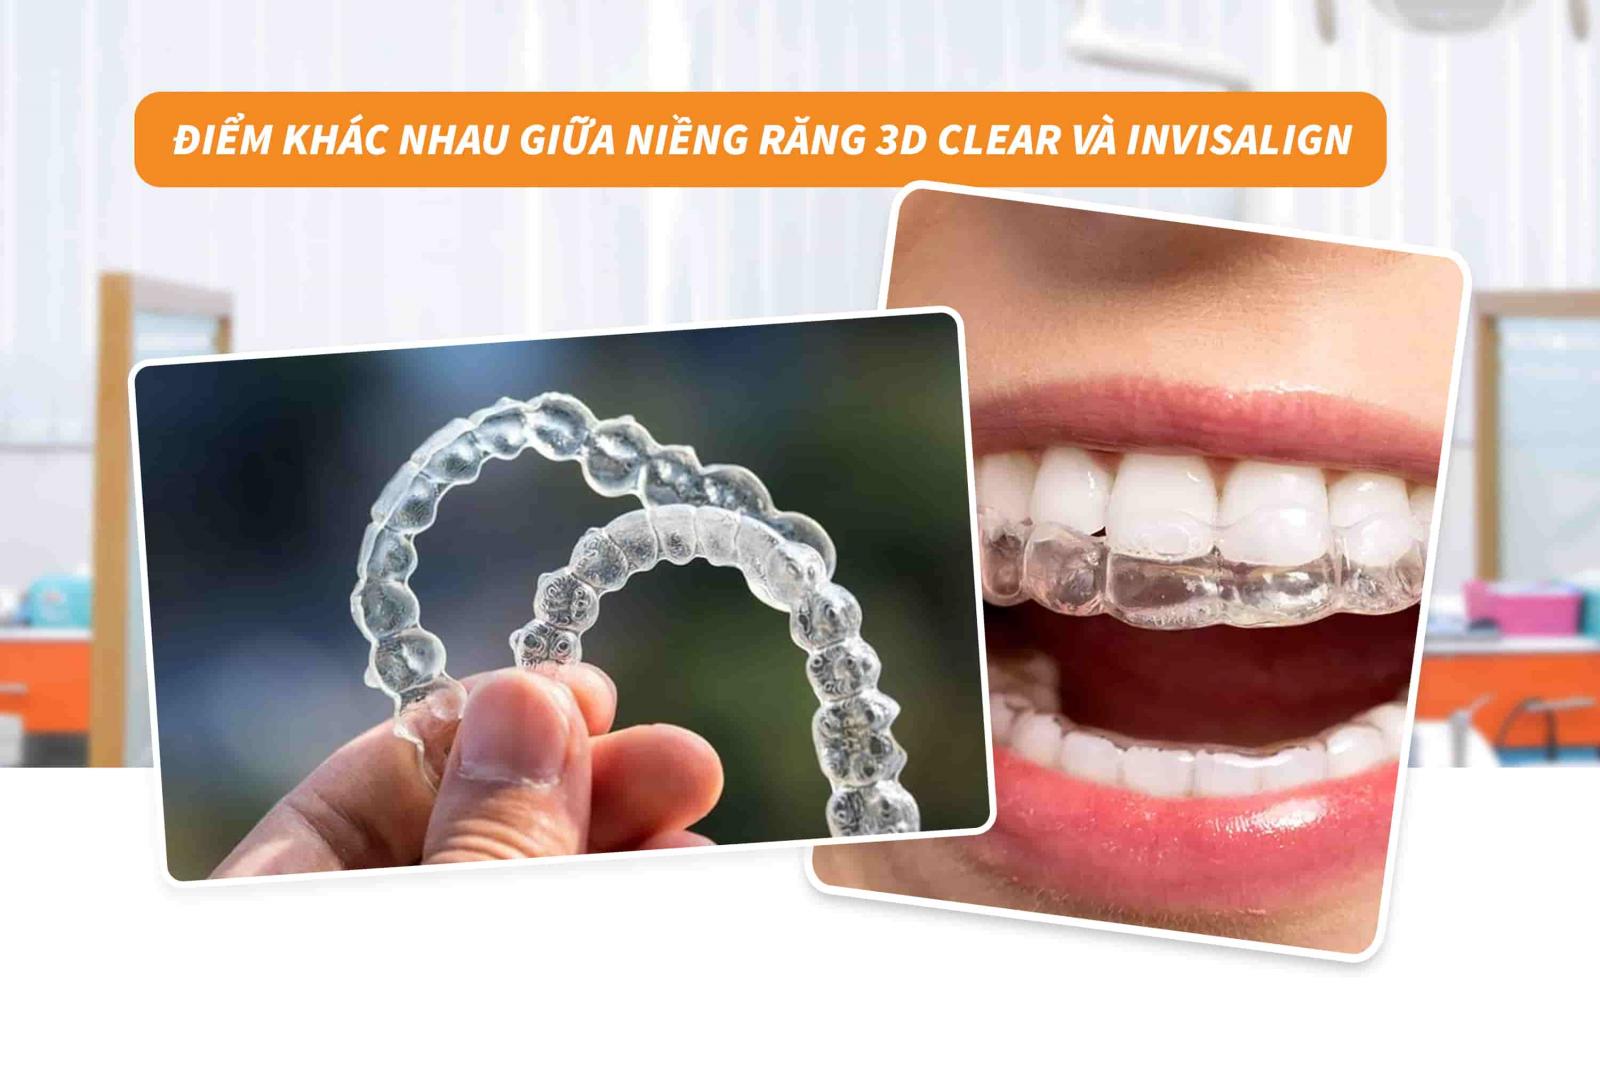 Điểm khác nhau giữa niềng răng 3D Clear và Invisalign